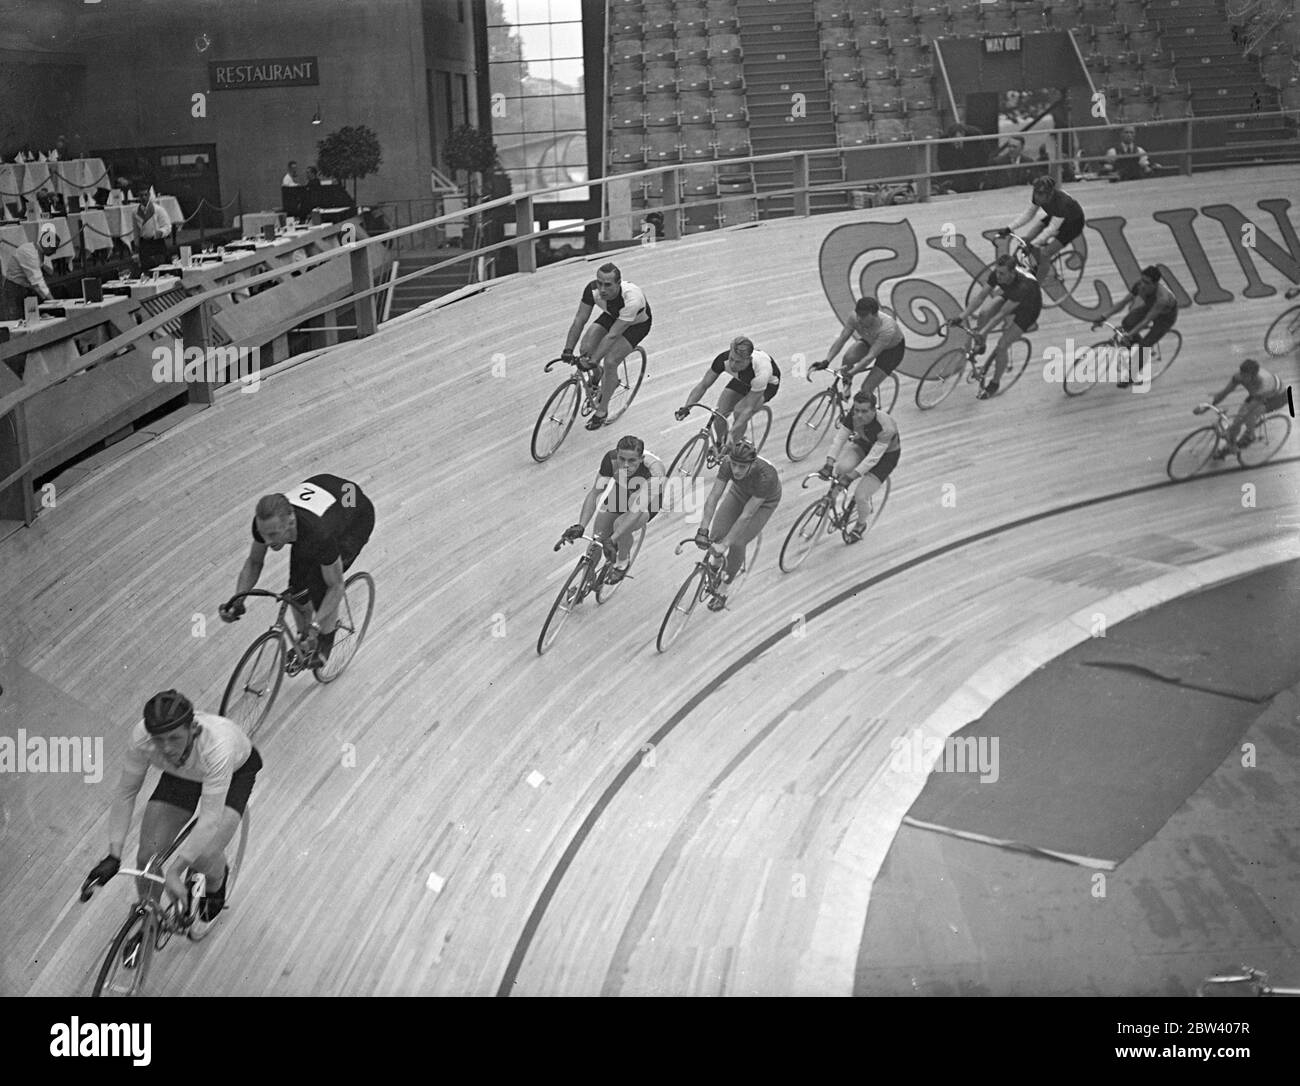 In gara a sei giorni . Sprint ha animato la prima giornata della gara ciclistica internazionale di sei giorni in cui 15 squadre che rappresentano diversi paesi stanno gareggiando a Wembley Pool . Spettacoli fotografici , lo sprint in corso a Wembley . 21 settembre 1936 Foto Stock